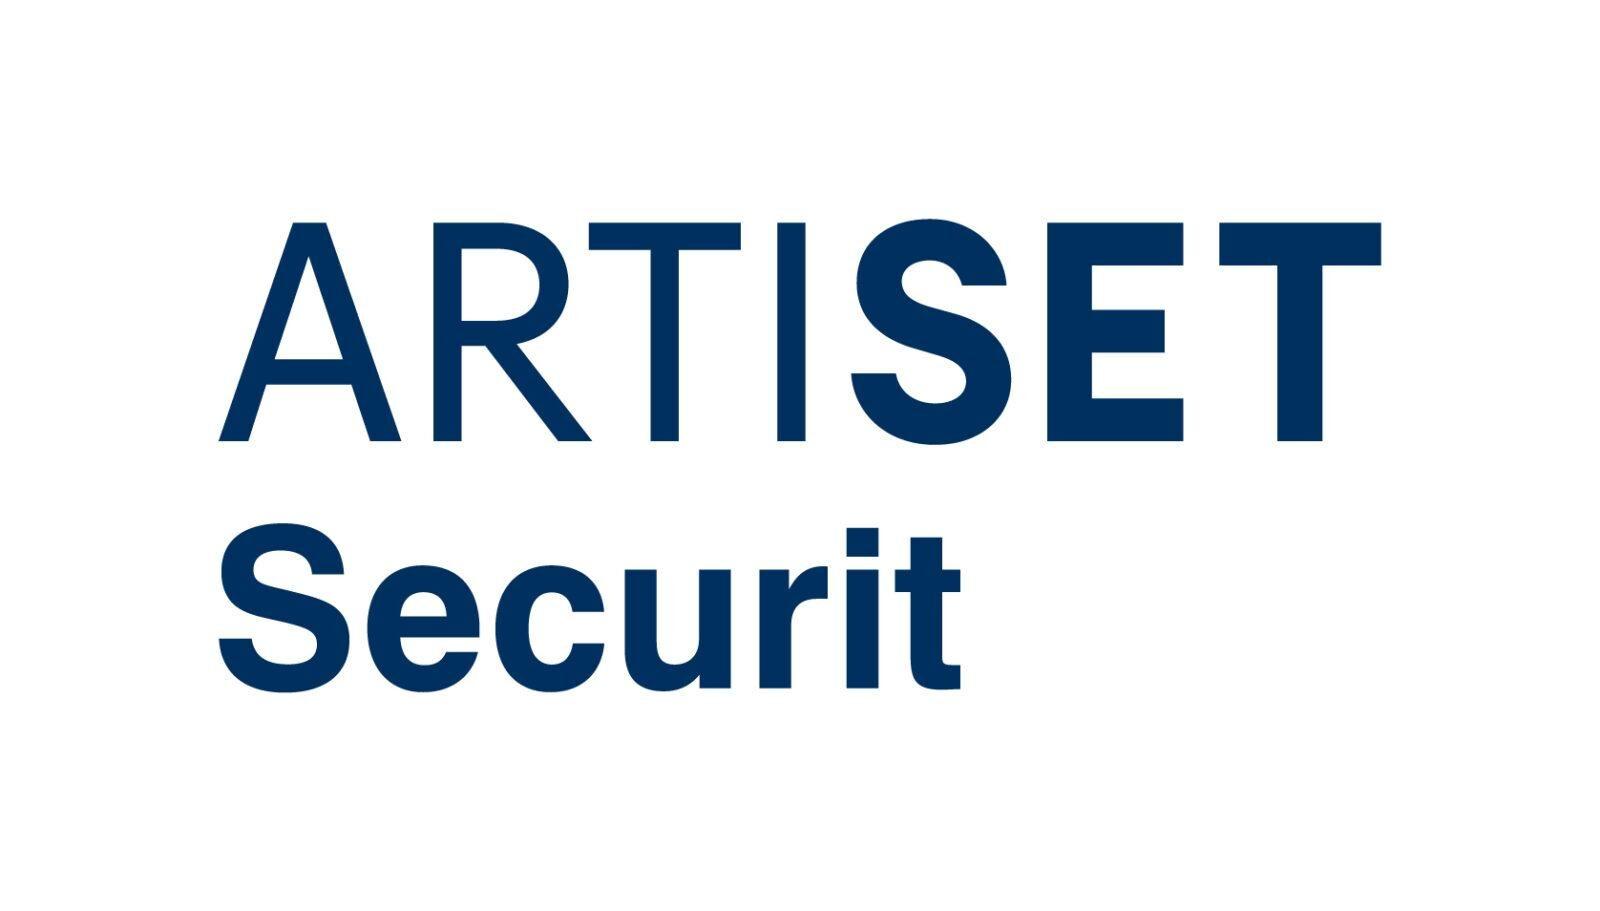 ARTISET Securit
c/o AEH Zentrum für Arbeitsmedizin